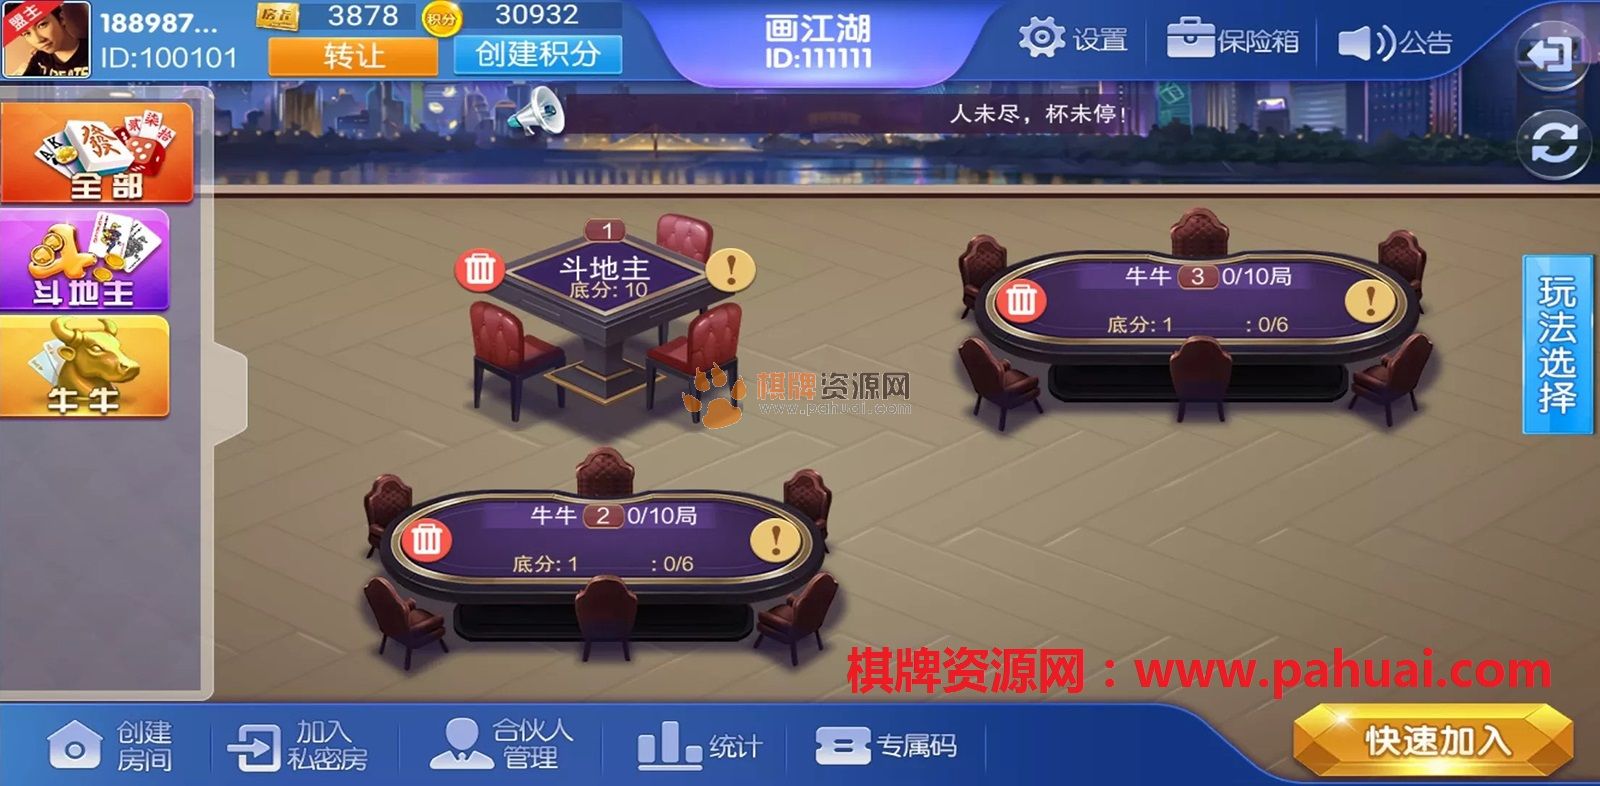 大湘娱乐棋牌房卡模式（联盟比赛）多玩法游戏平台源码组件